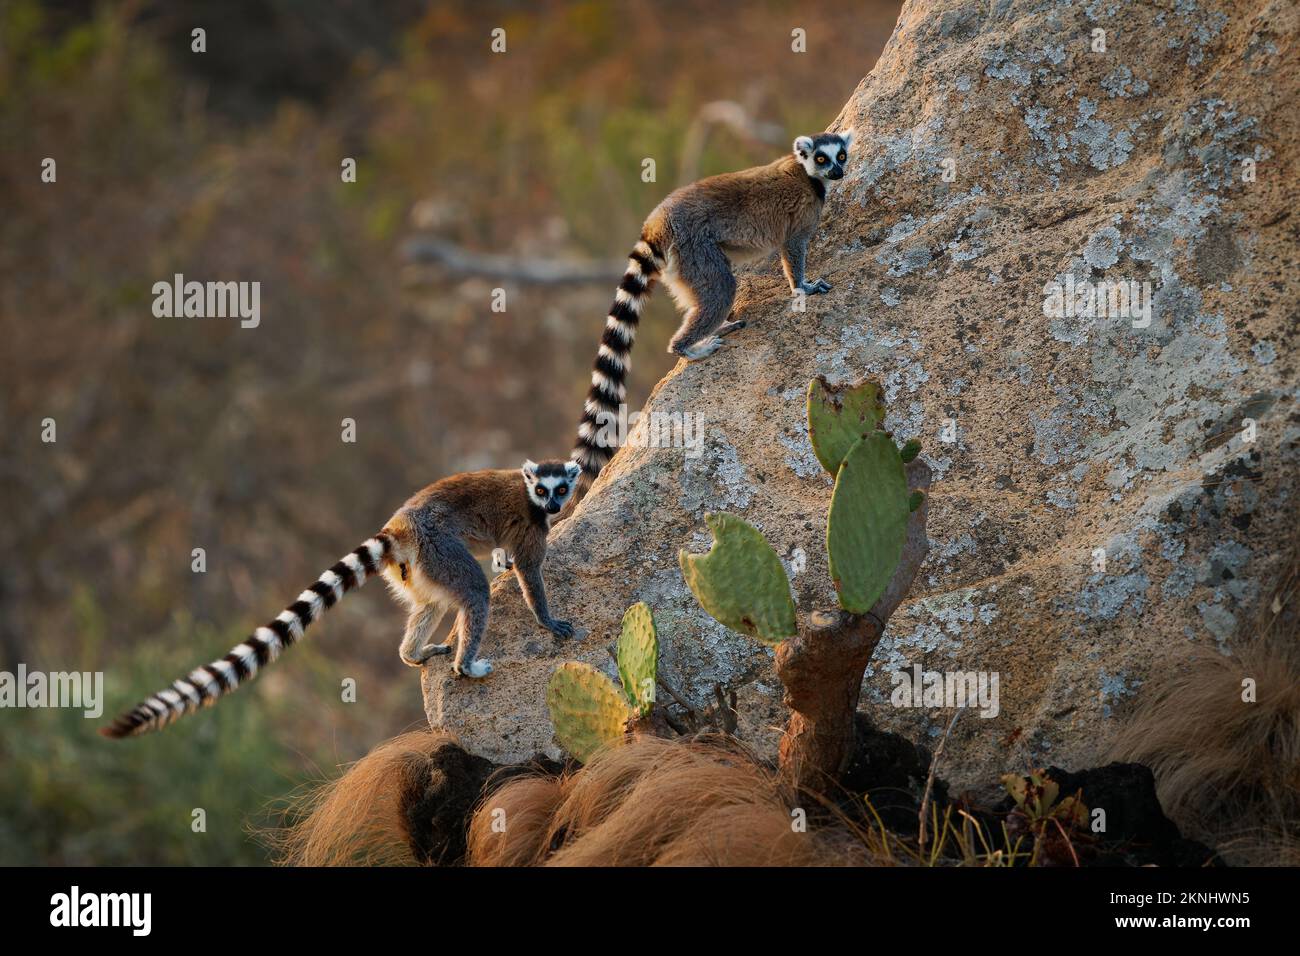 Lemur de cola anillada - Lemur catta Primato de estrepsirrrrrina grande con cola anillada larga, negra y blanca, endémica de Madagascar y en peligro de extinción, en Madagascar Foto de stock